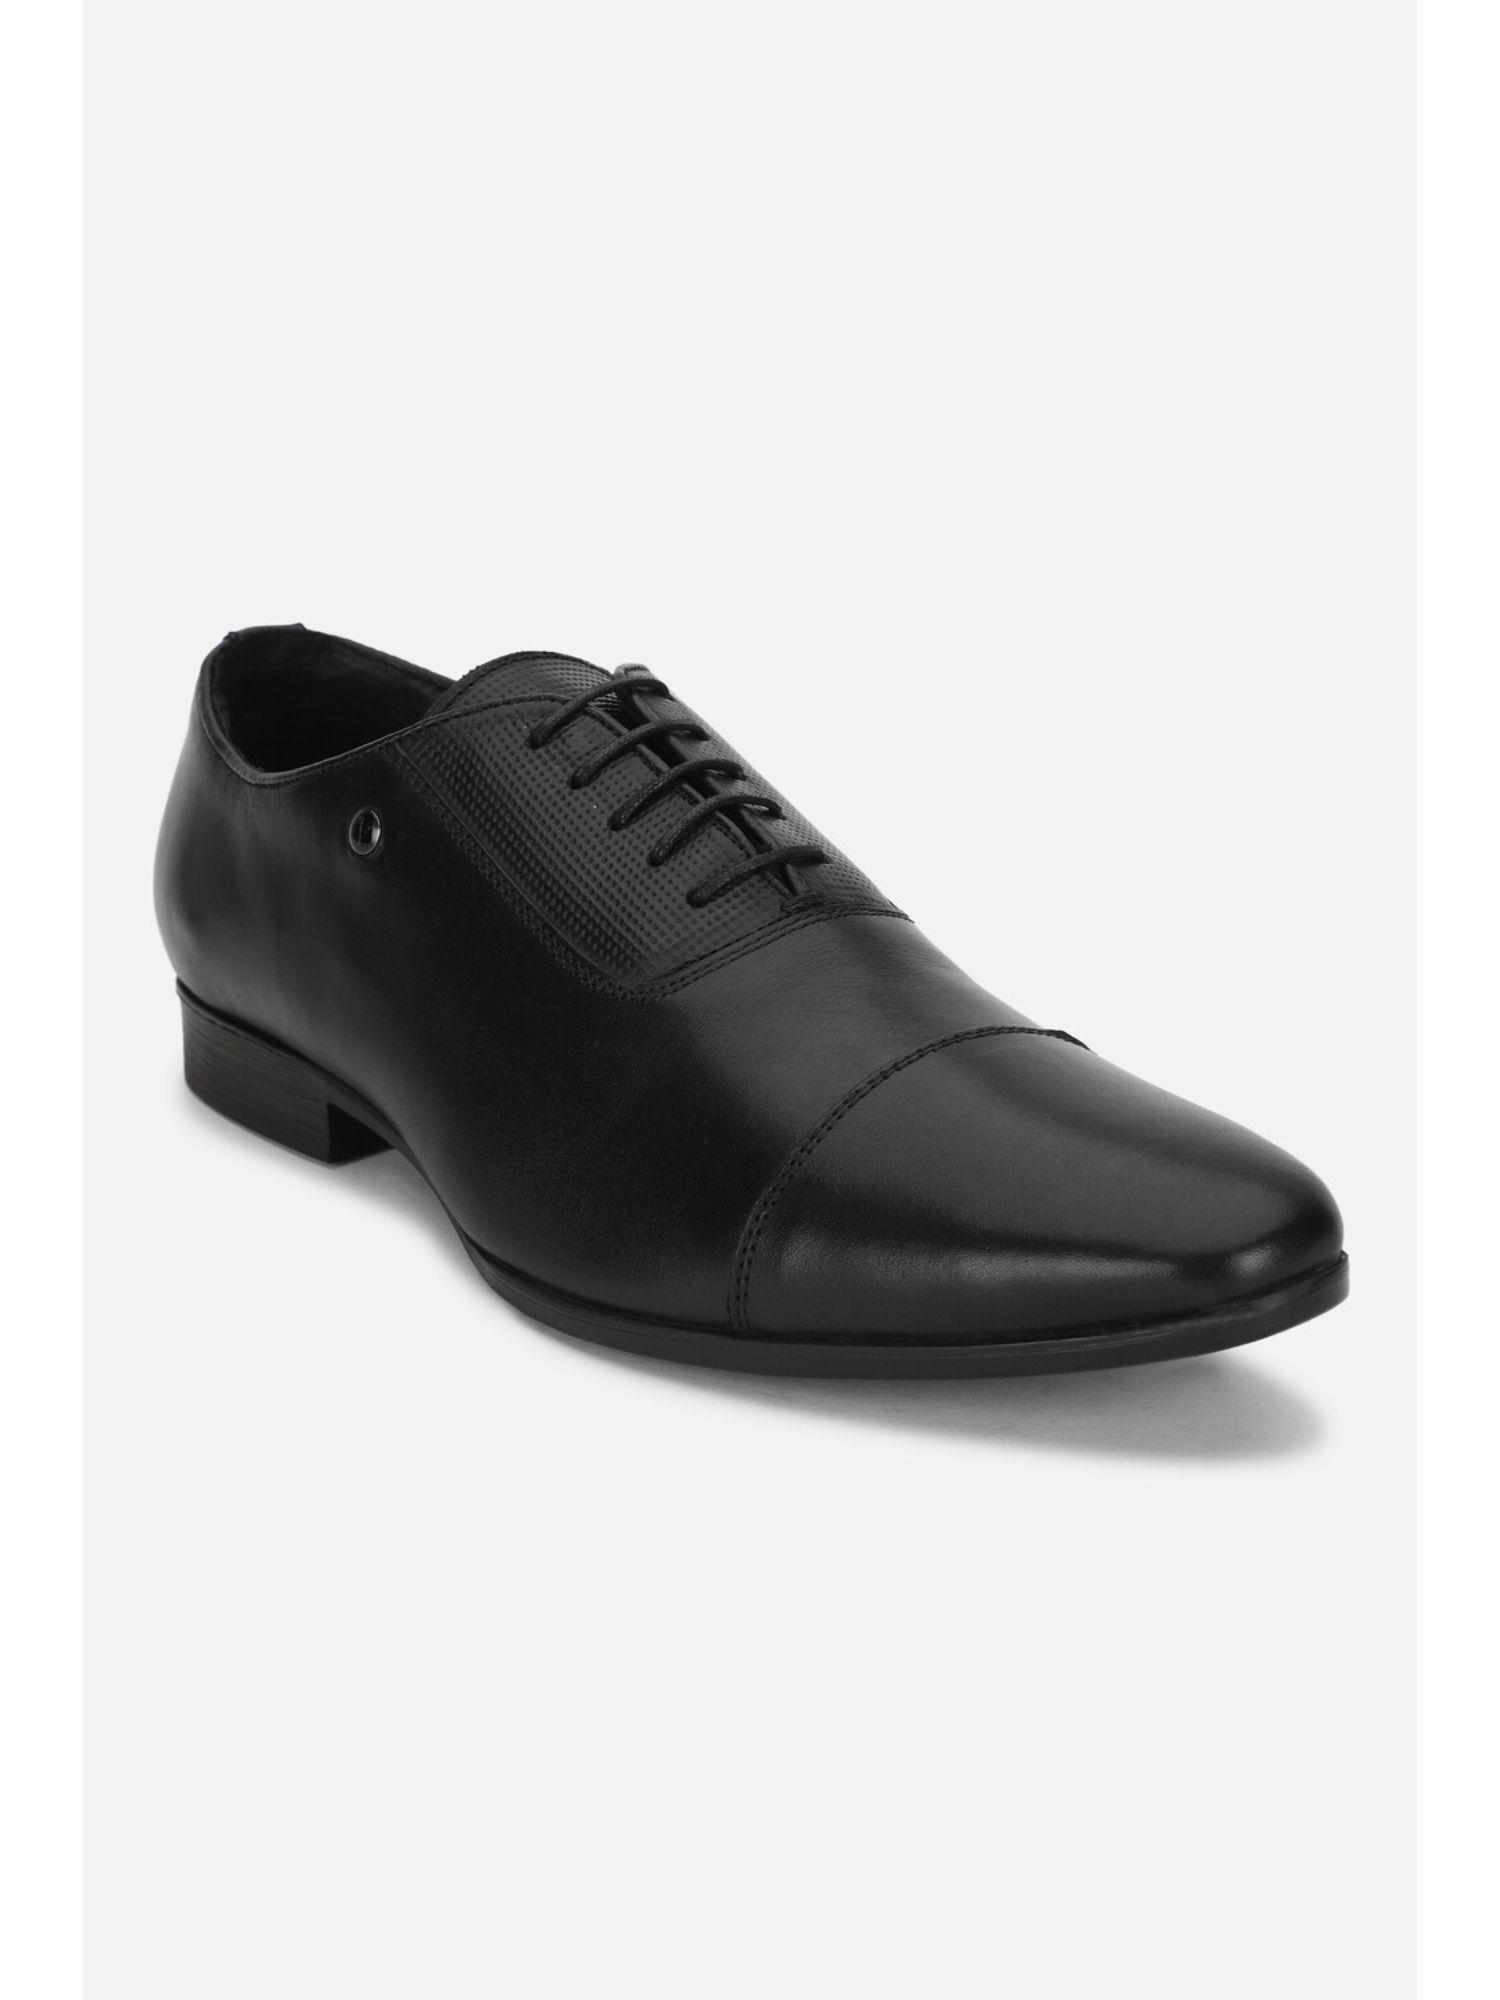 men black formal oxford shoes